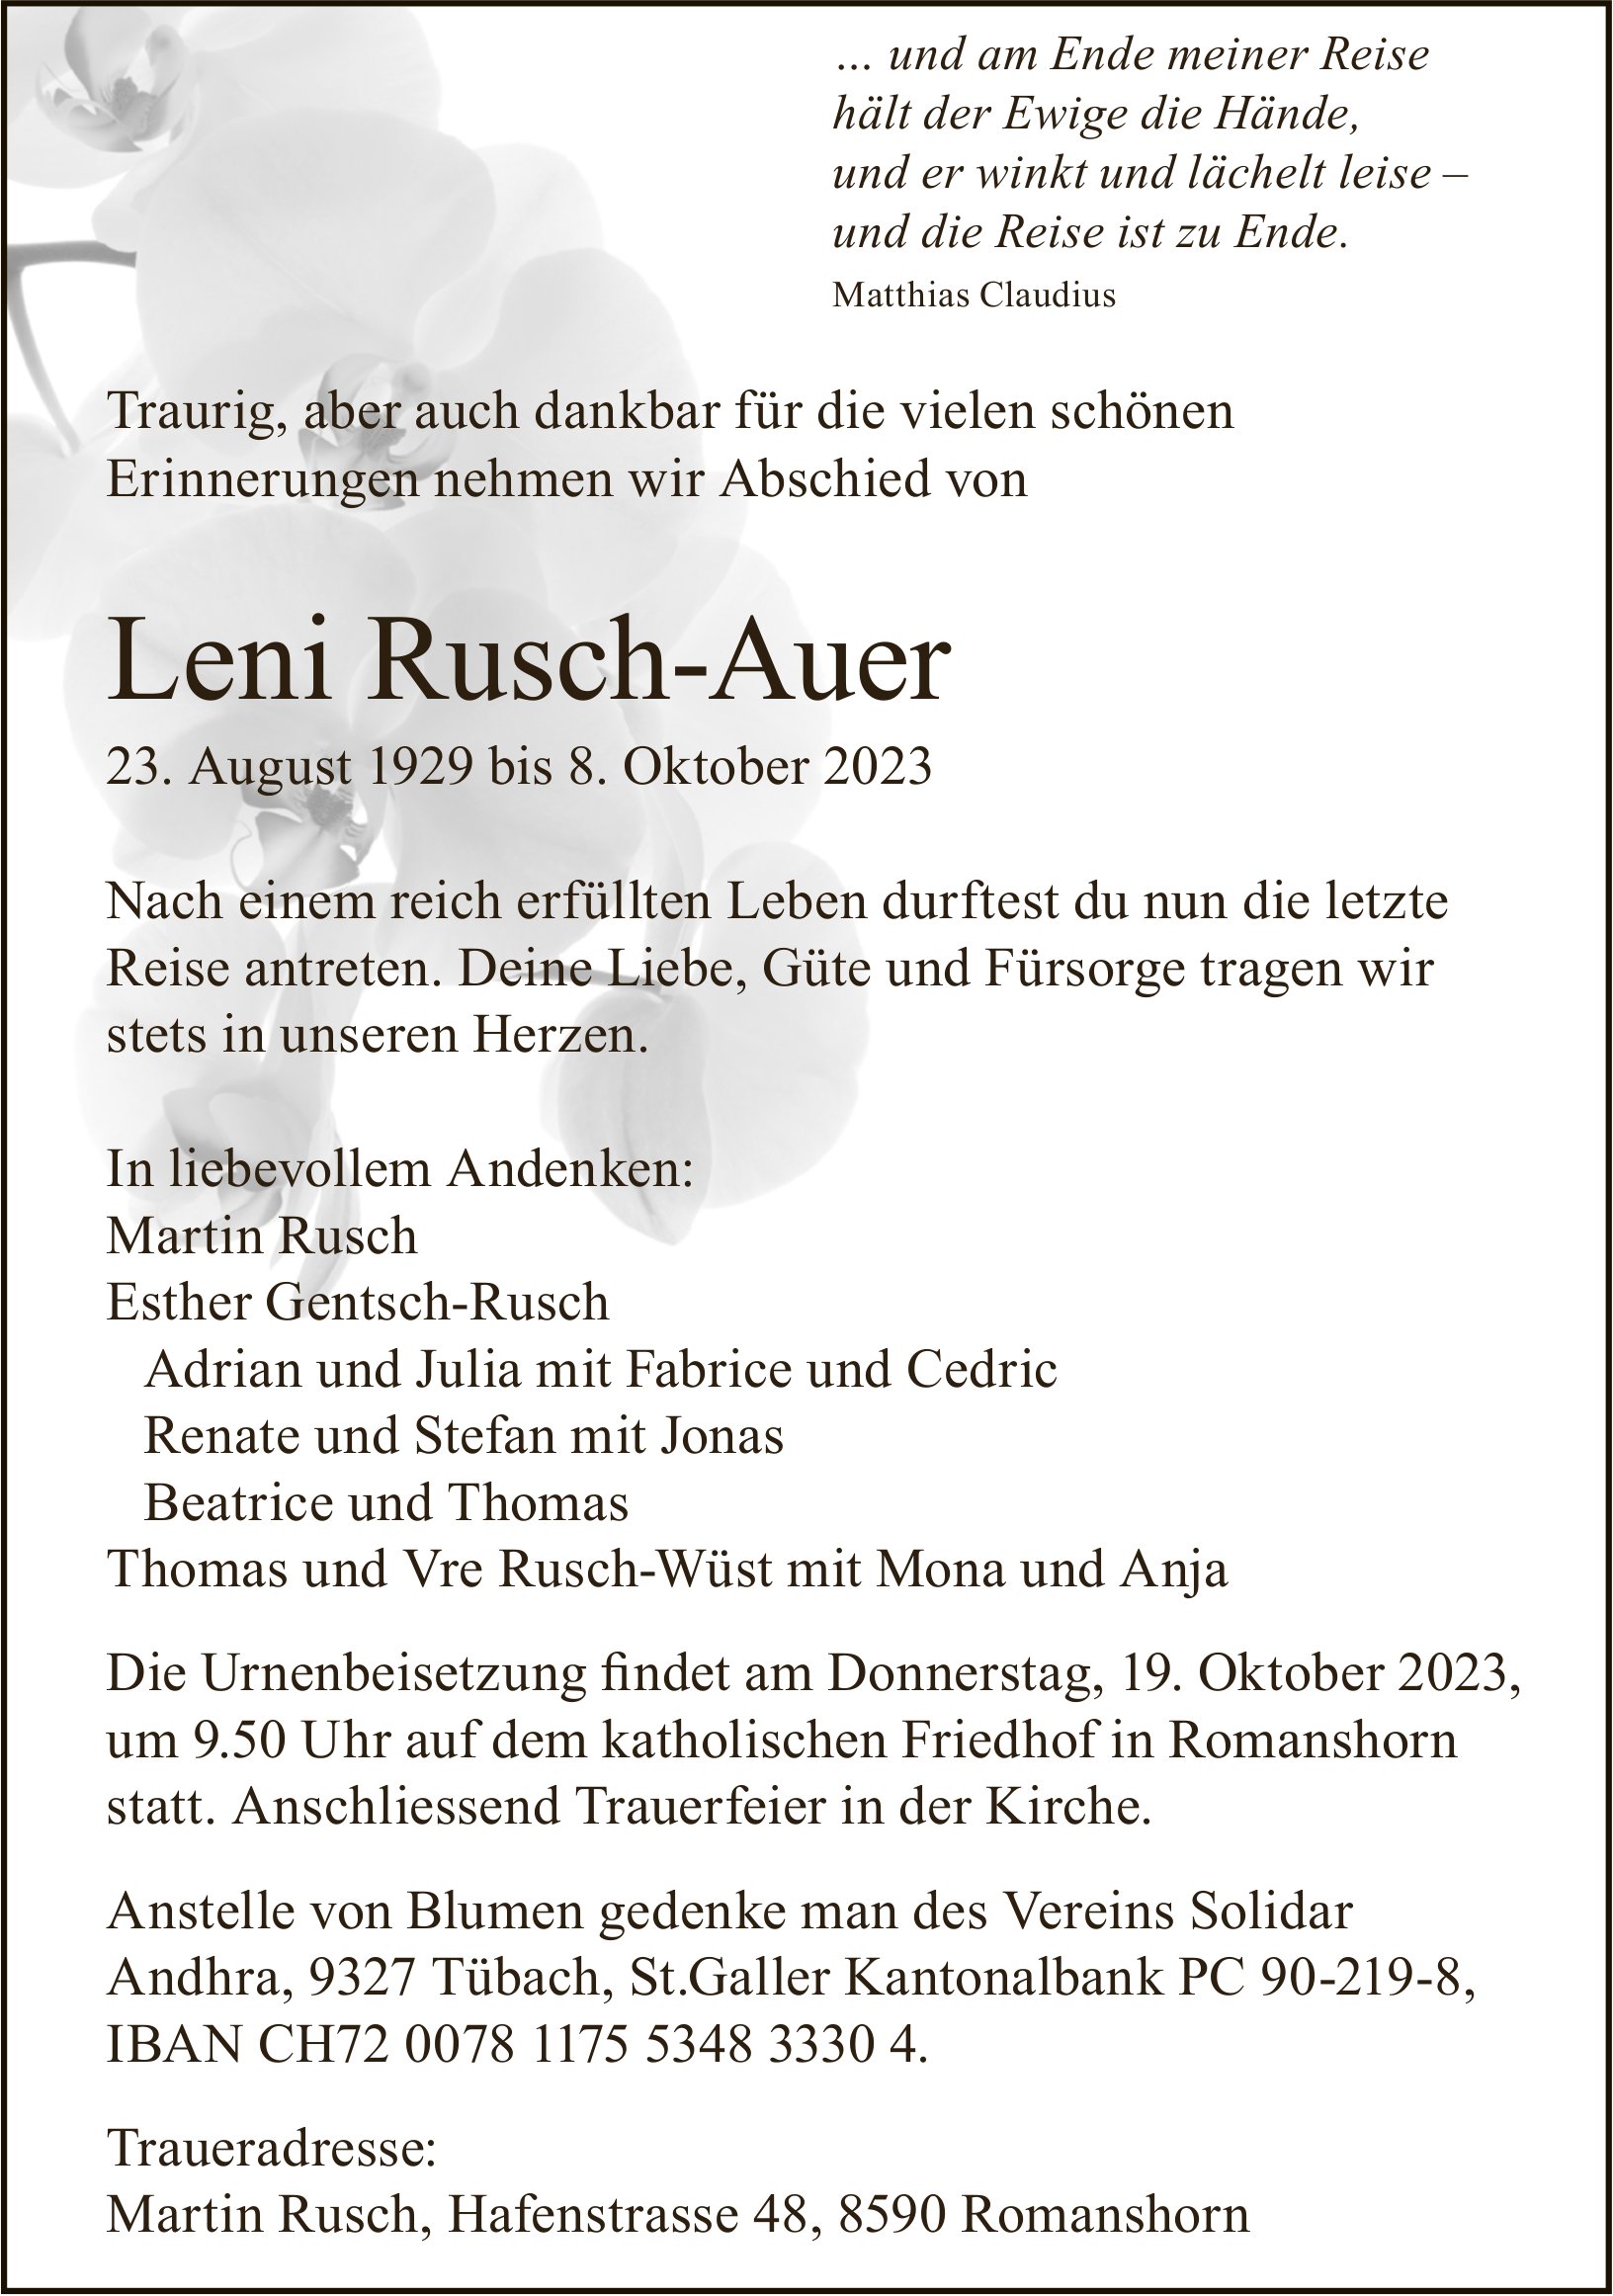 Leni Rusch-Auer, Oktober 2023 / TA